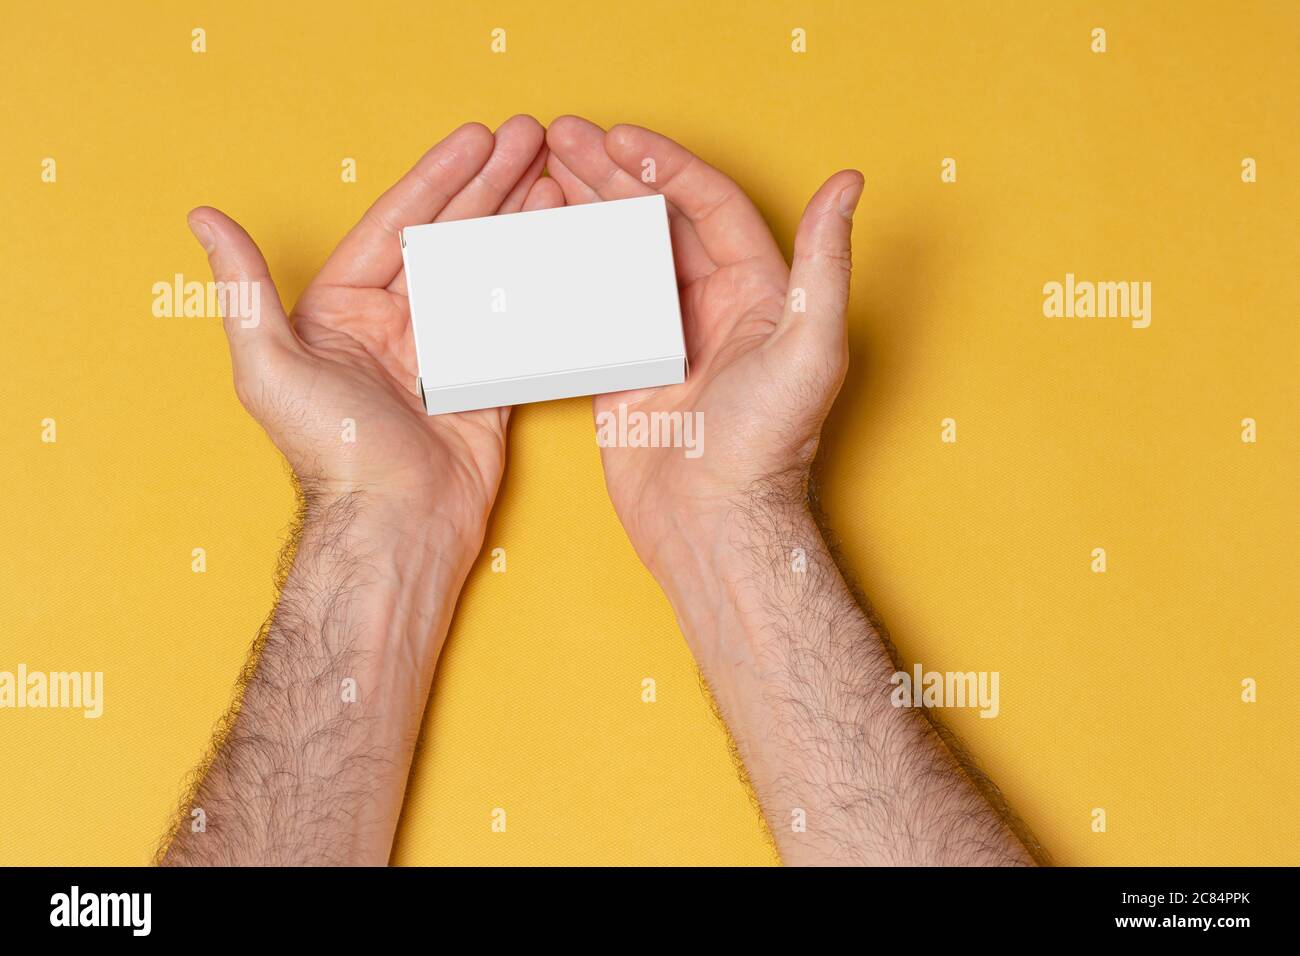 Eine Pillbox in den Händen, bearbeitbare Modell-up-Serie Vorlage bereit für Ihr Design, Auswahlpfad enthalten. Stockfoto